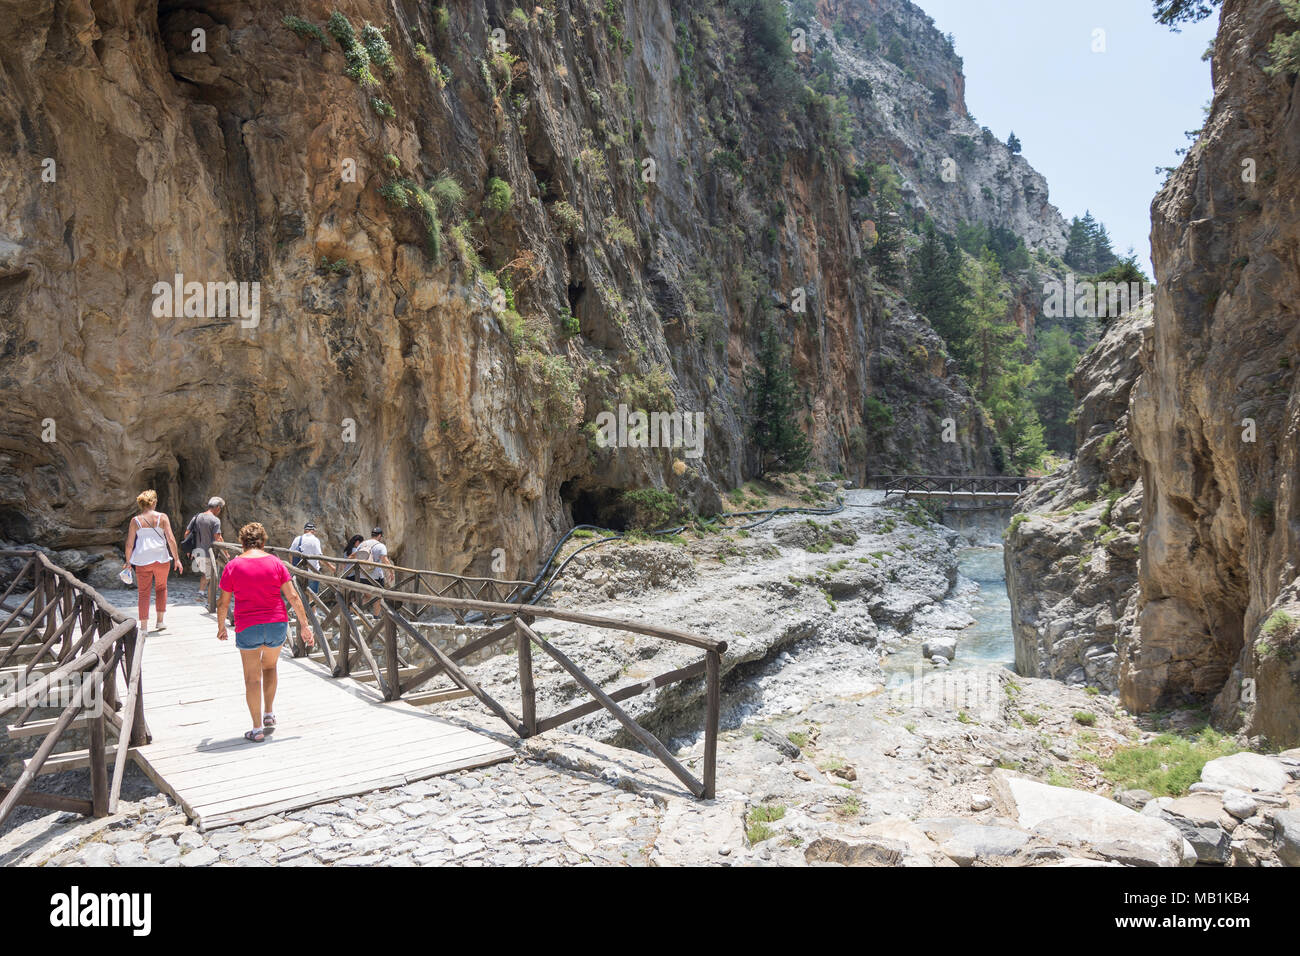 Les promeneurs marchant à travers portes étroites de la Gorge de Samaria. Agia Roumeli, Sfakia, Chania, Crete Région (Crète), Grèce Banque D'Images